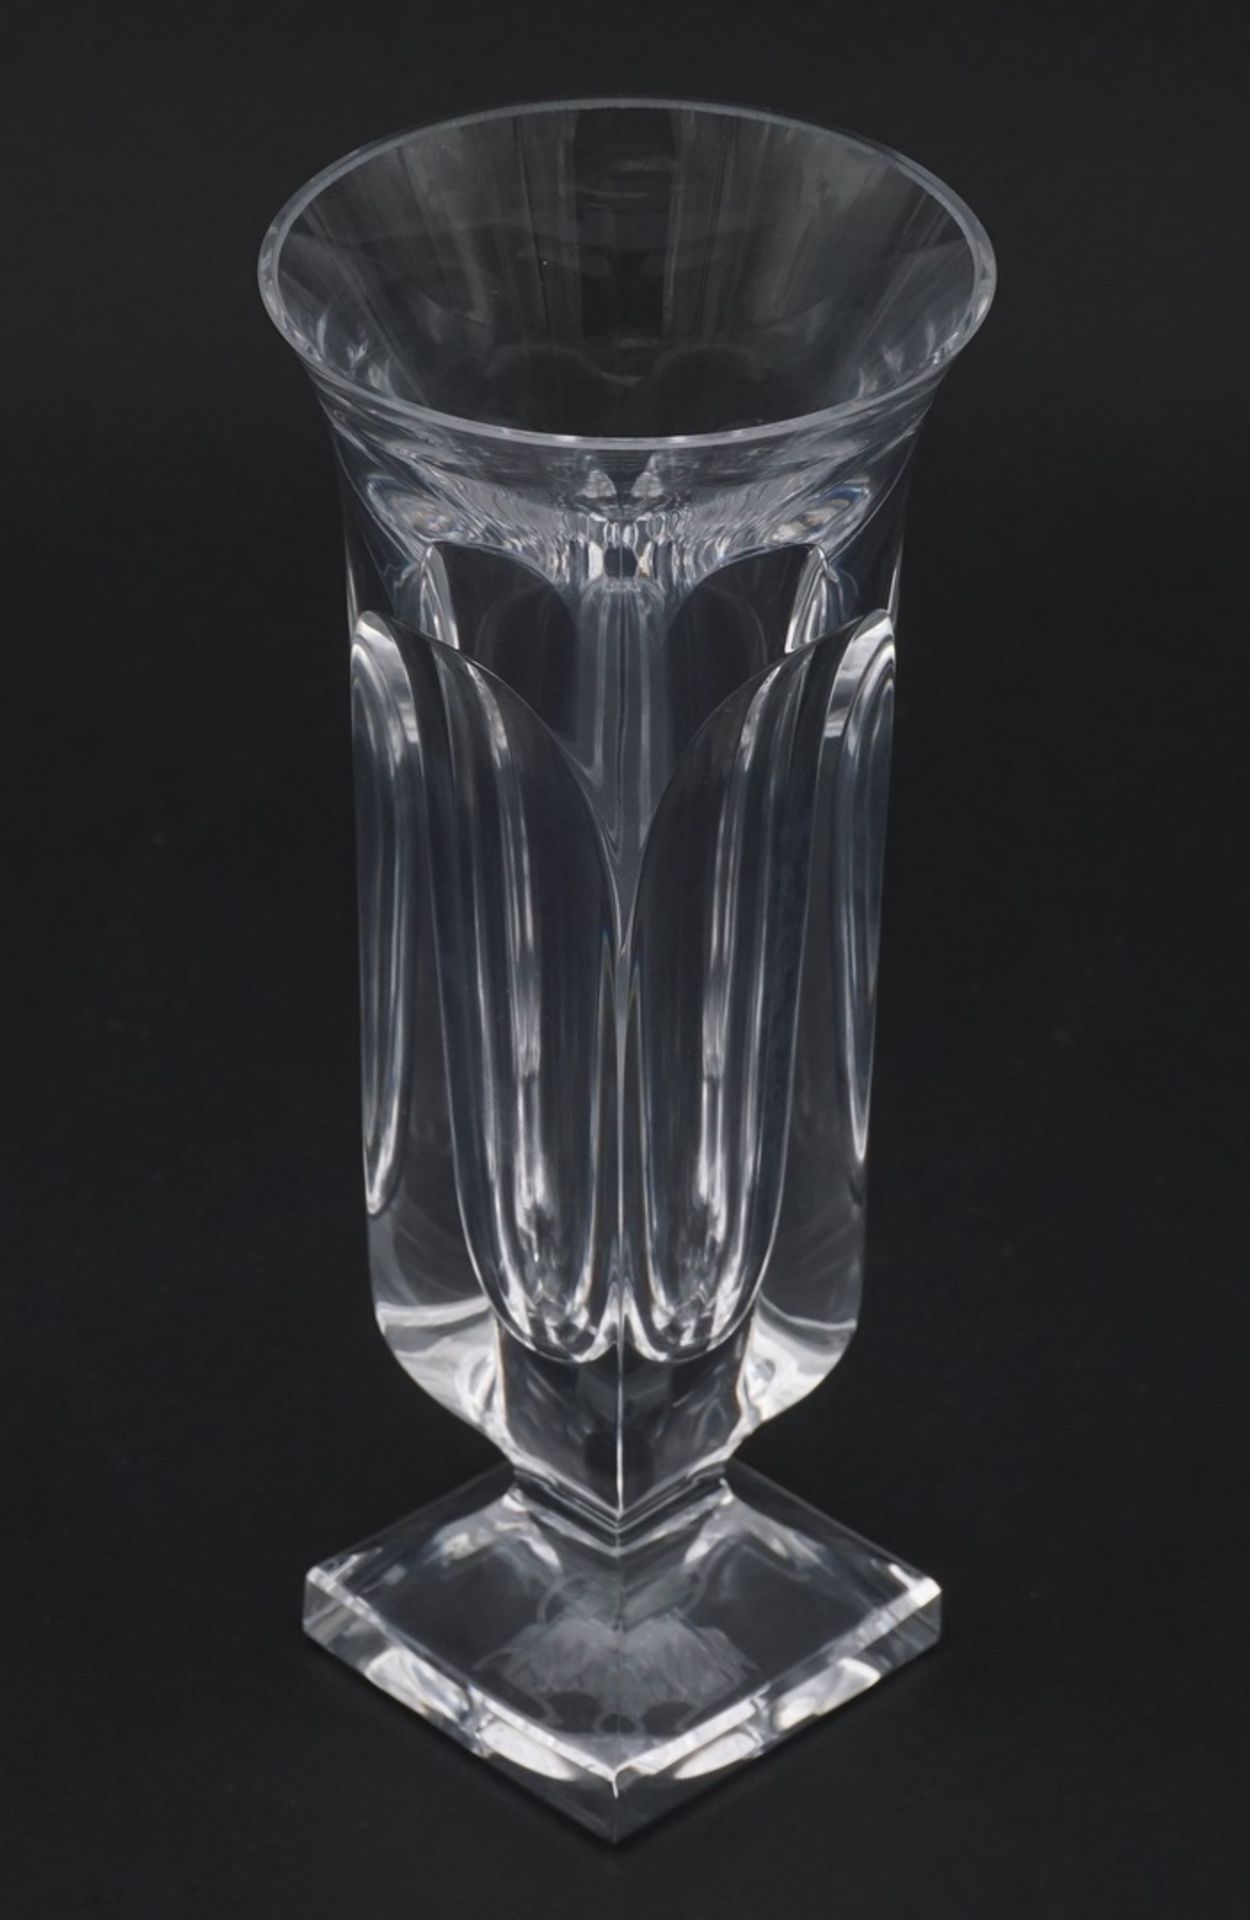 Drei kleine Moser Vasen, 2. Hälfte 20. Jh.Kristallglas, im Boden Ätzmarke des Herstellers Moser, - Image 2 of 3